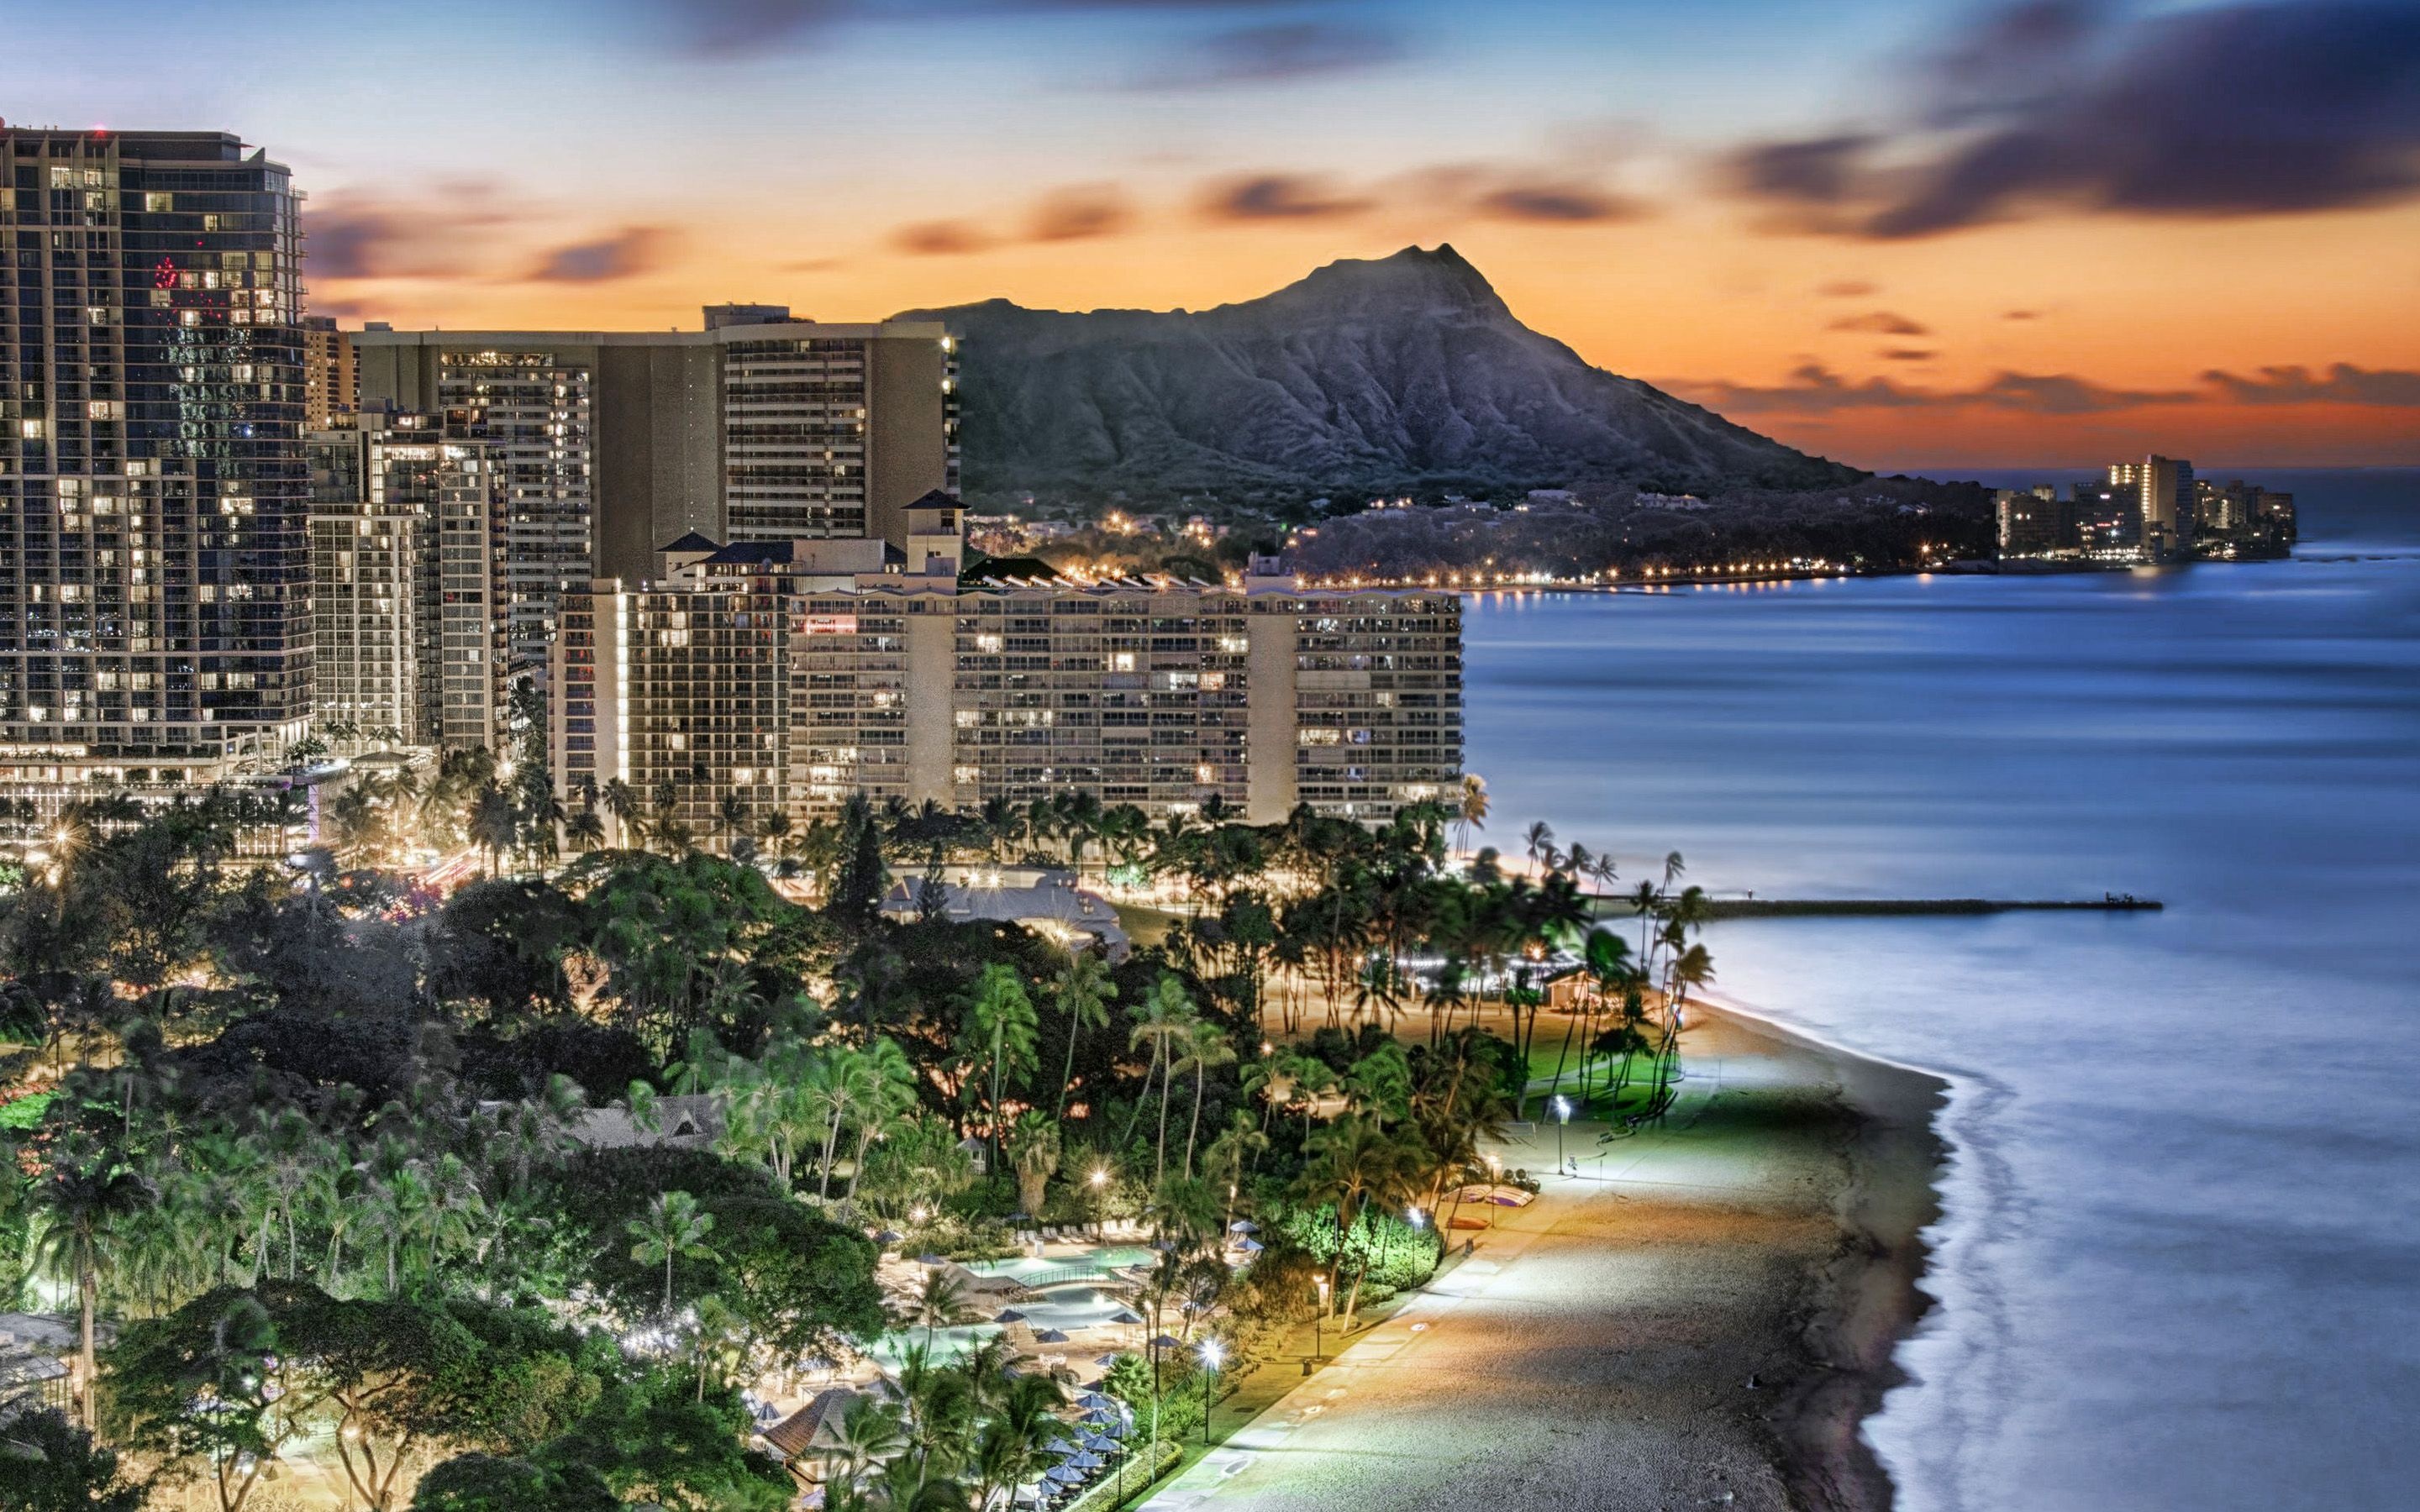 Honolulu: Desktop wallpapers of Waikiki. 2880x1800 HD Wallpaper.